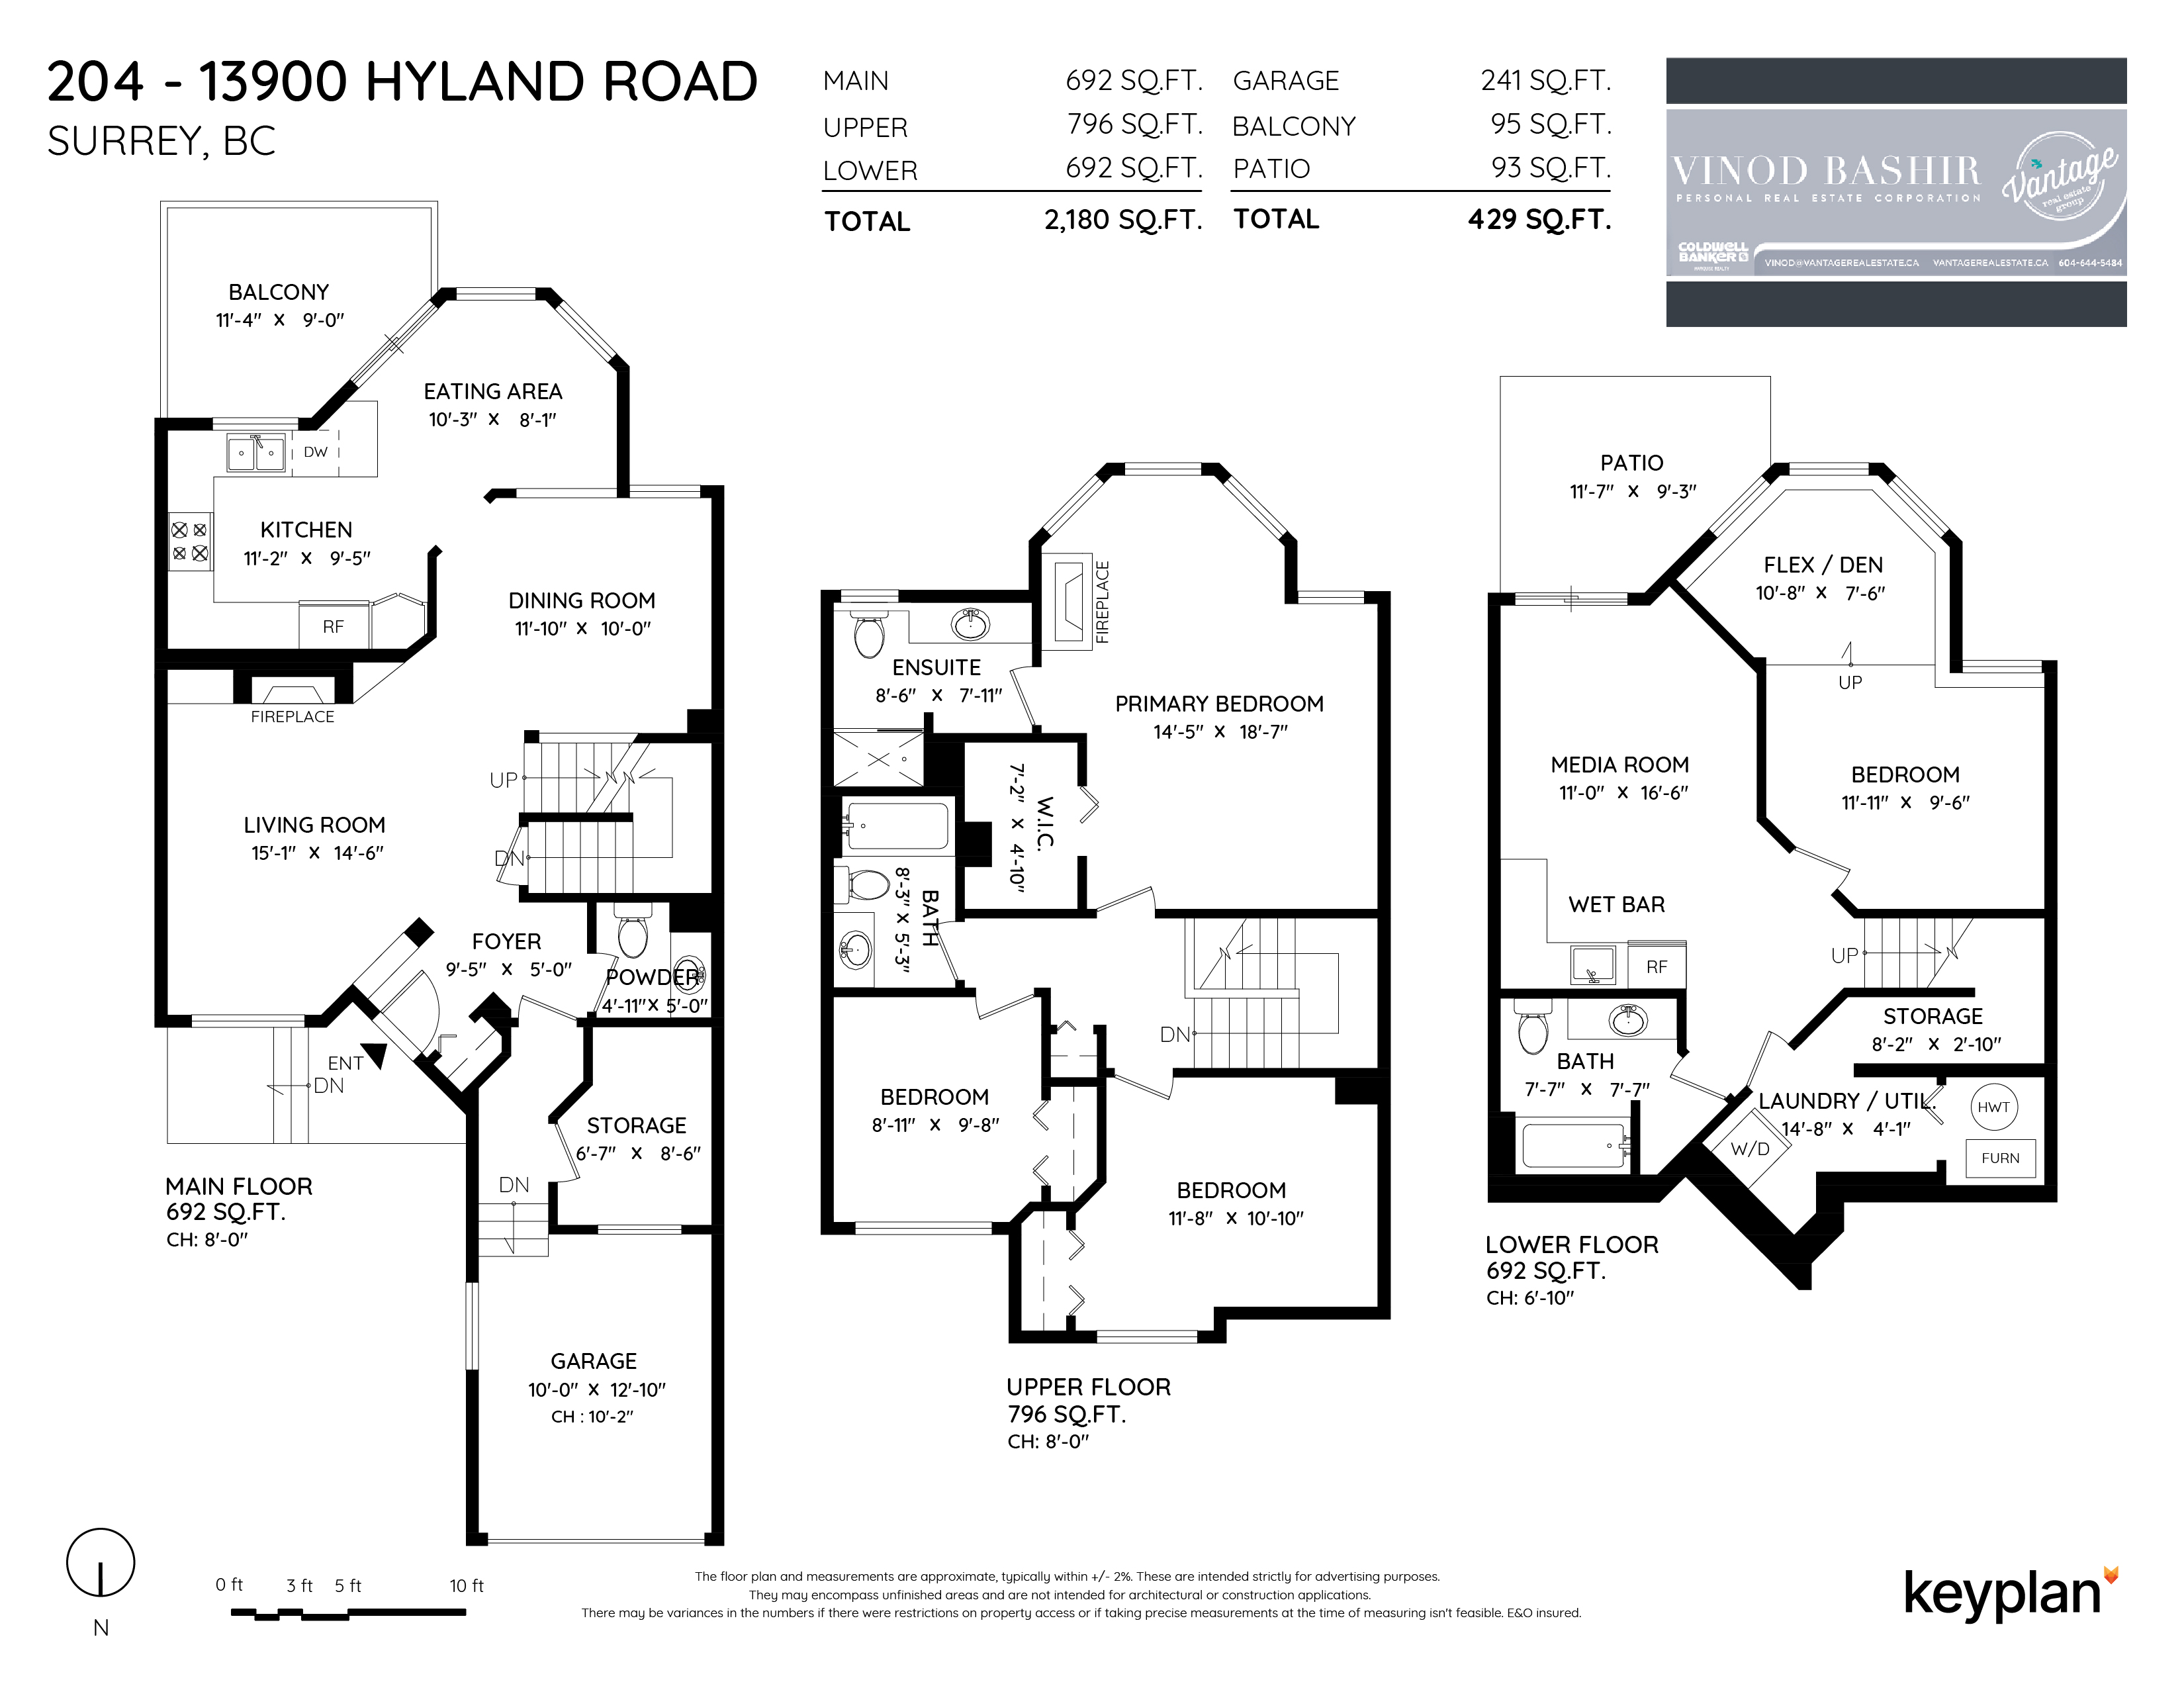 Vantage Real Estate Group - 13900 Hyland Road, Surrey, BC, Canada | Floor Plan 1